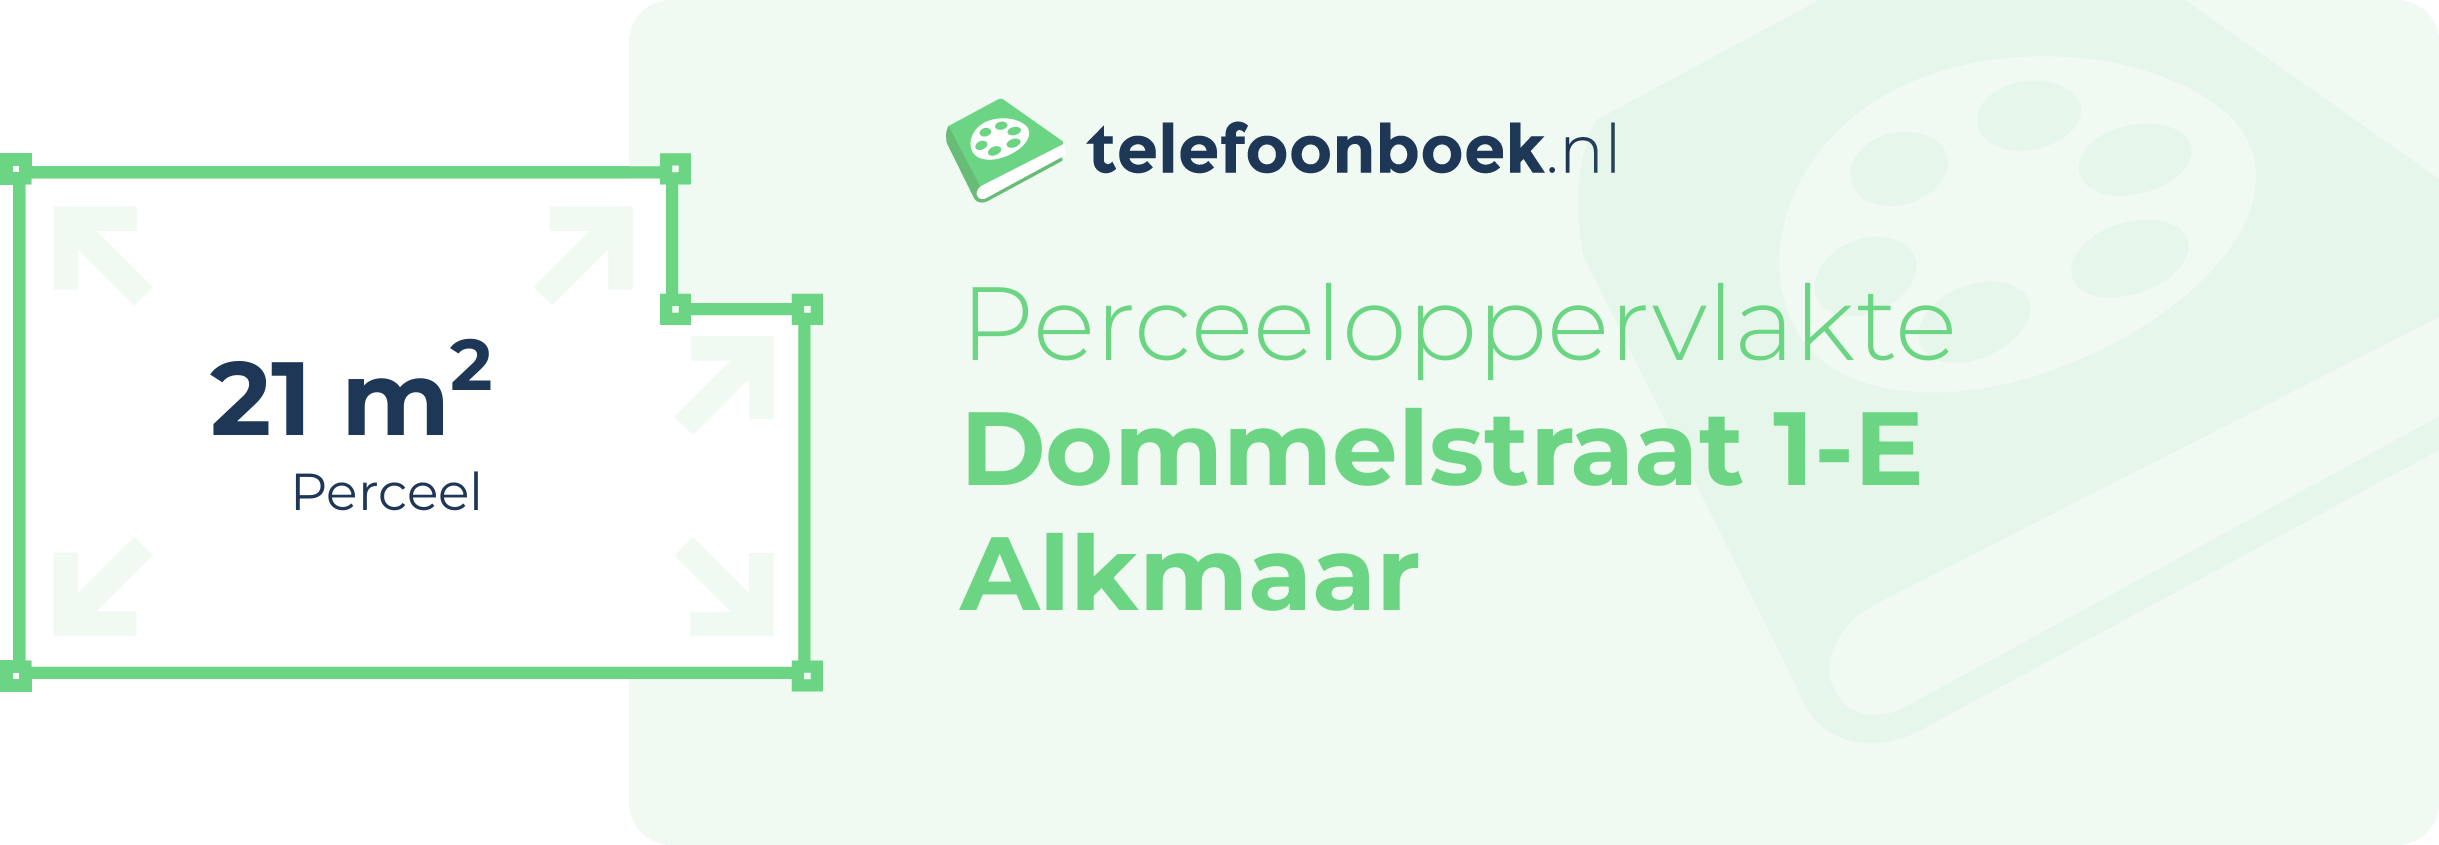 Perceeloppervlakte Dommelstraat 1-E Alkmaar